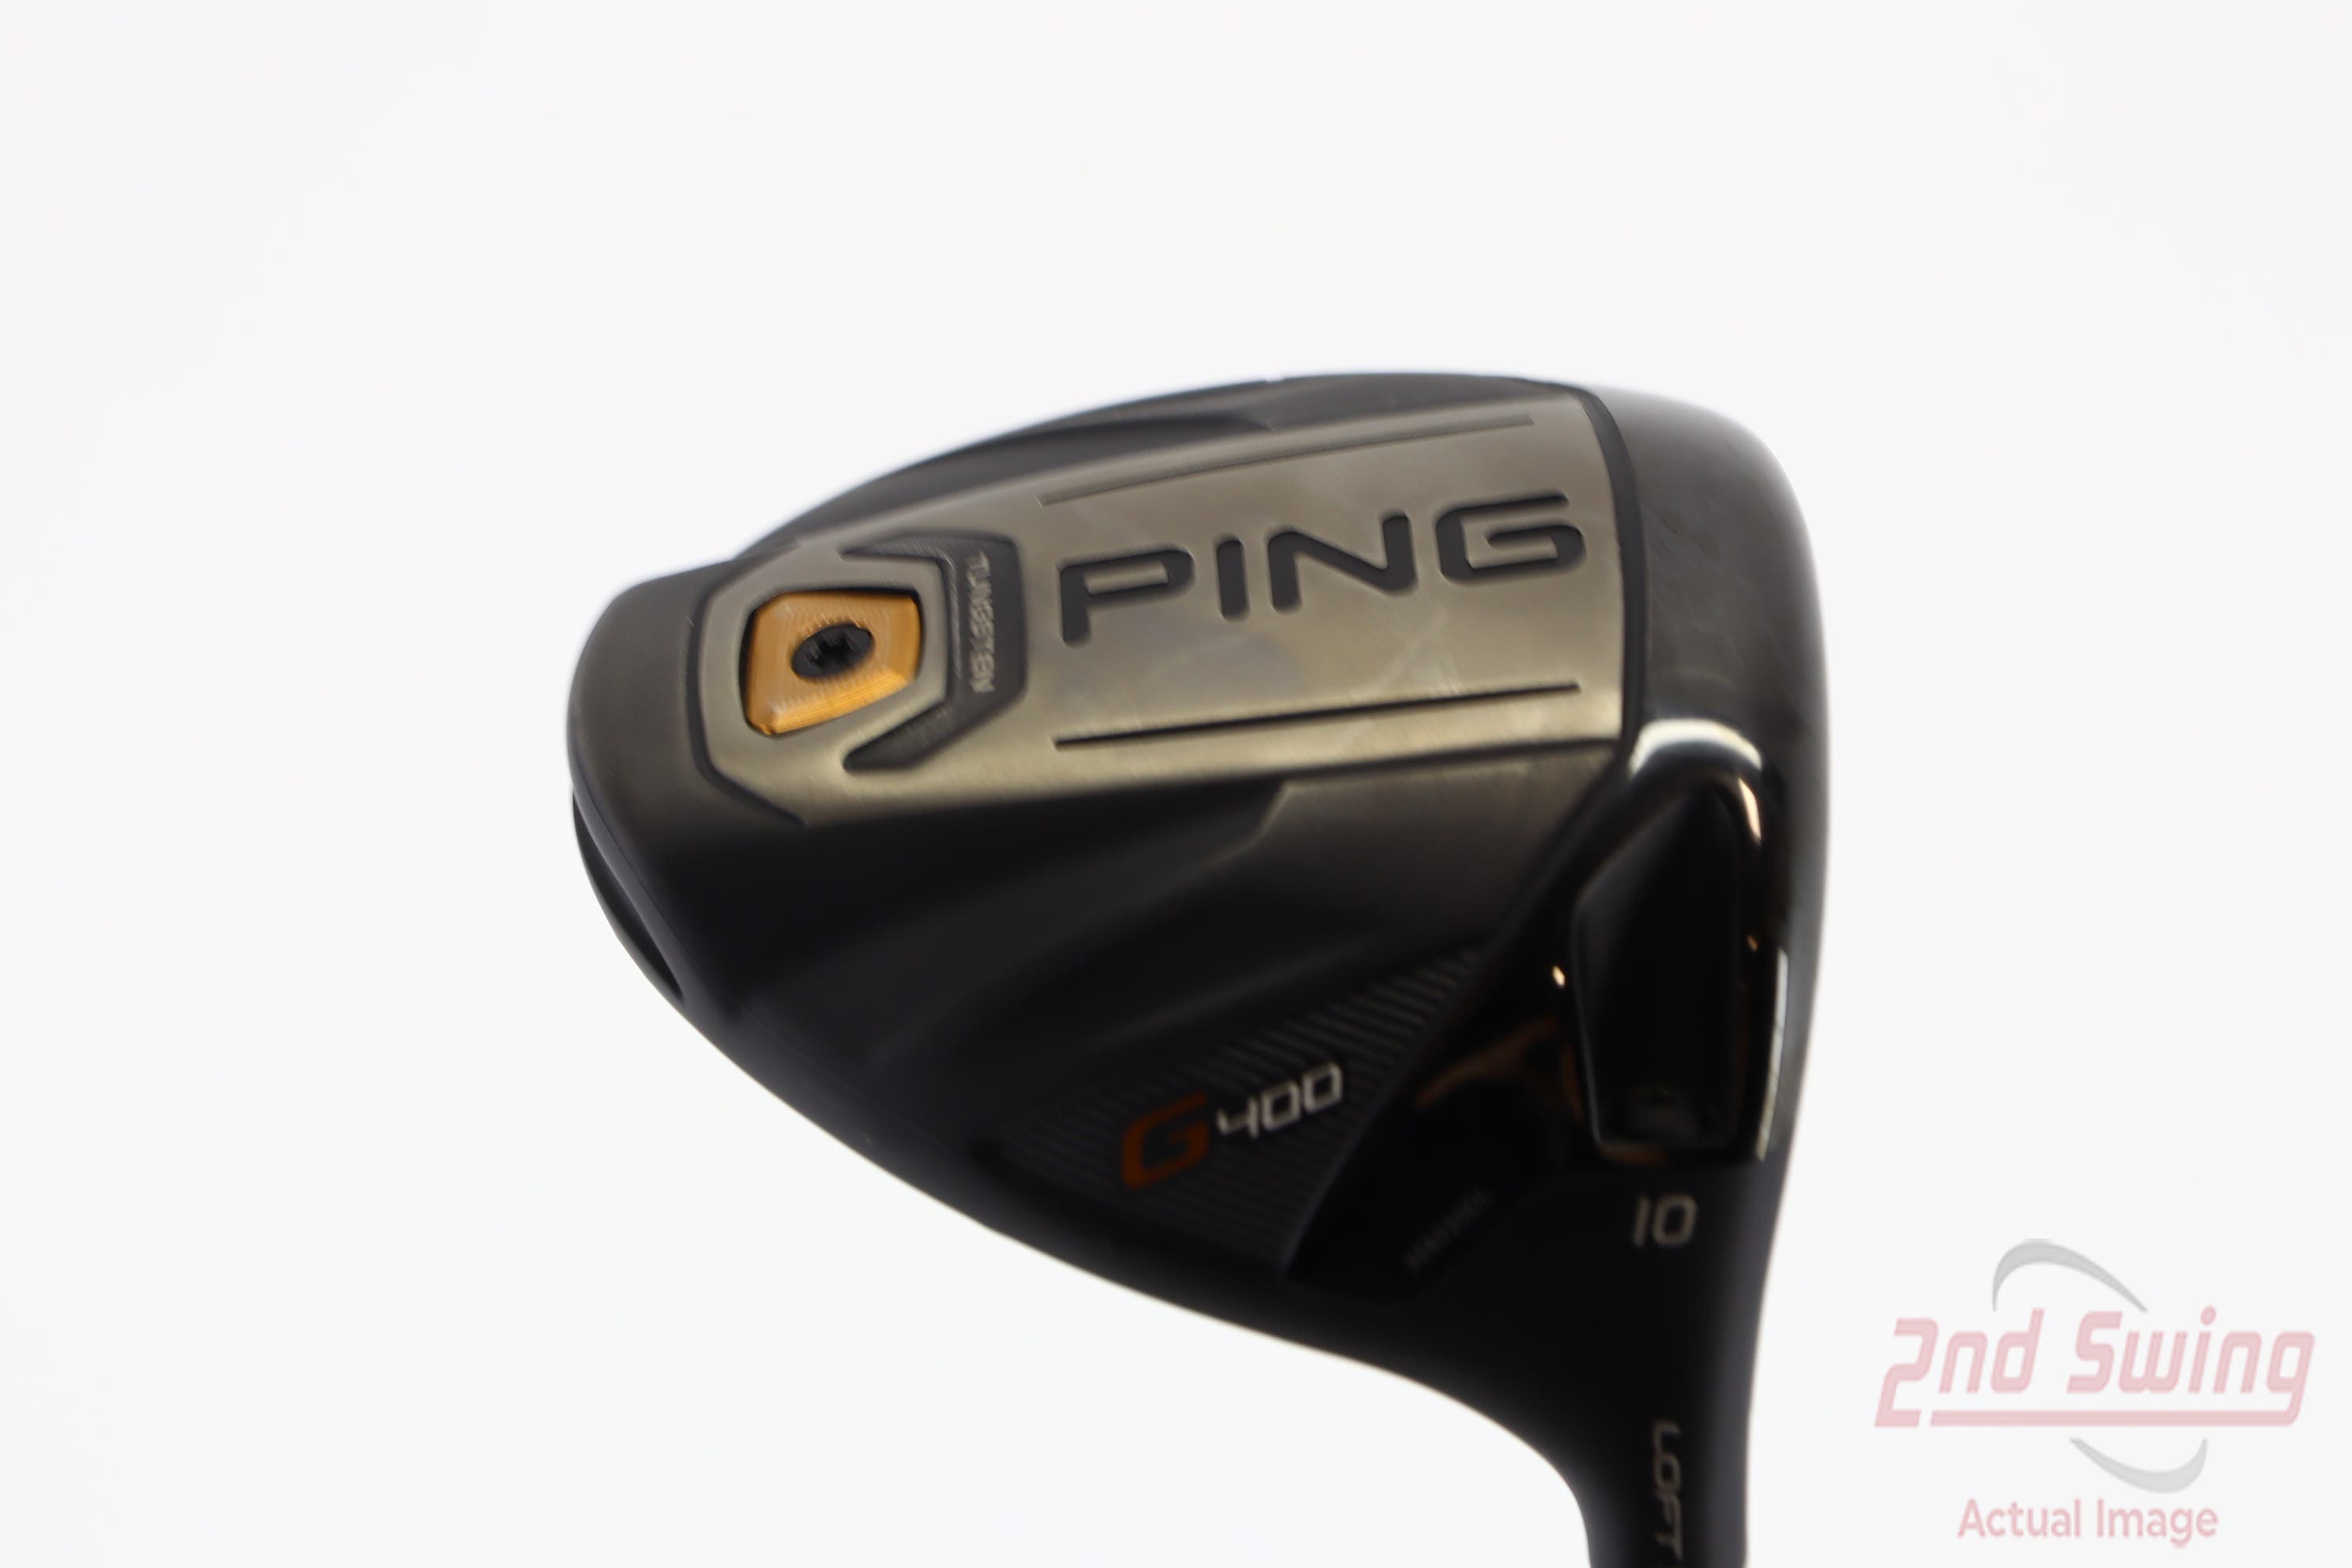 Ping G400 LS Tec Driver | 2nd Swing Golf